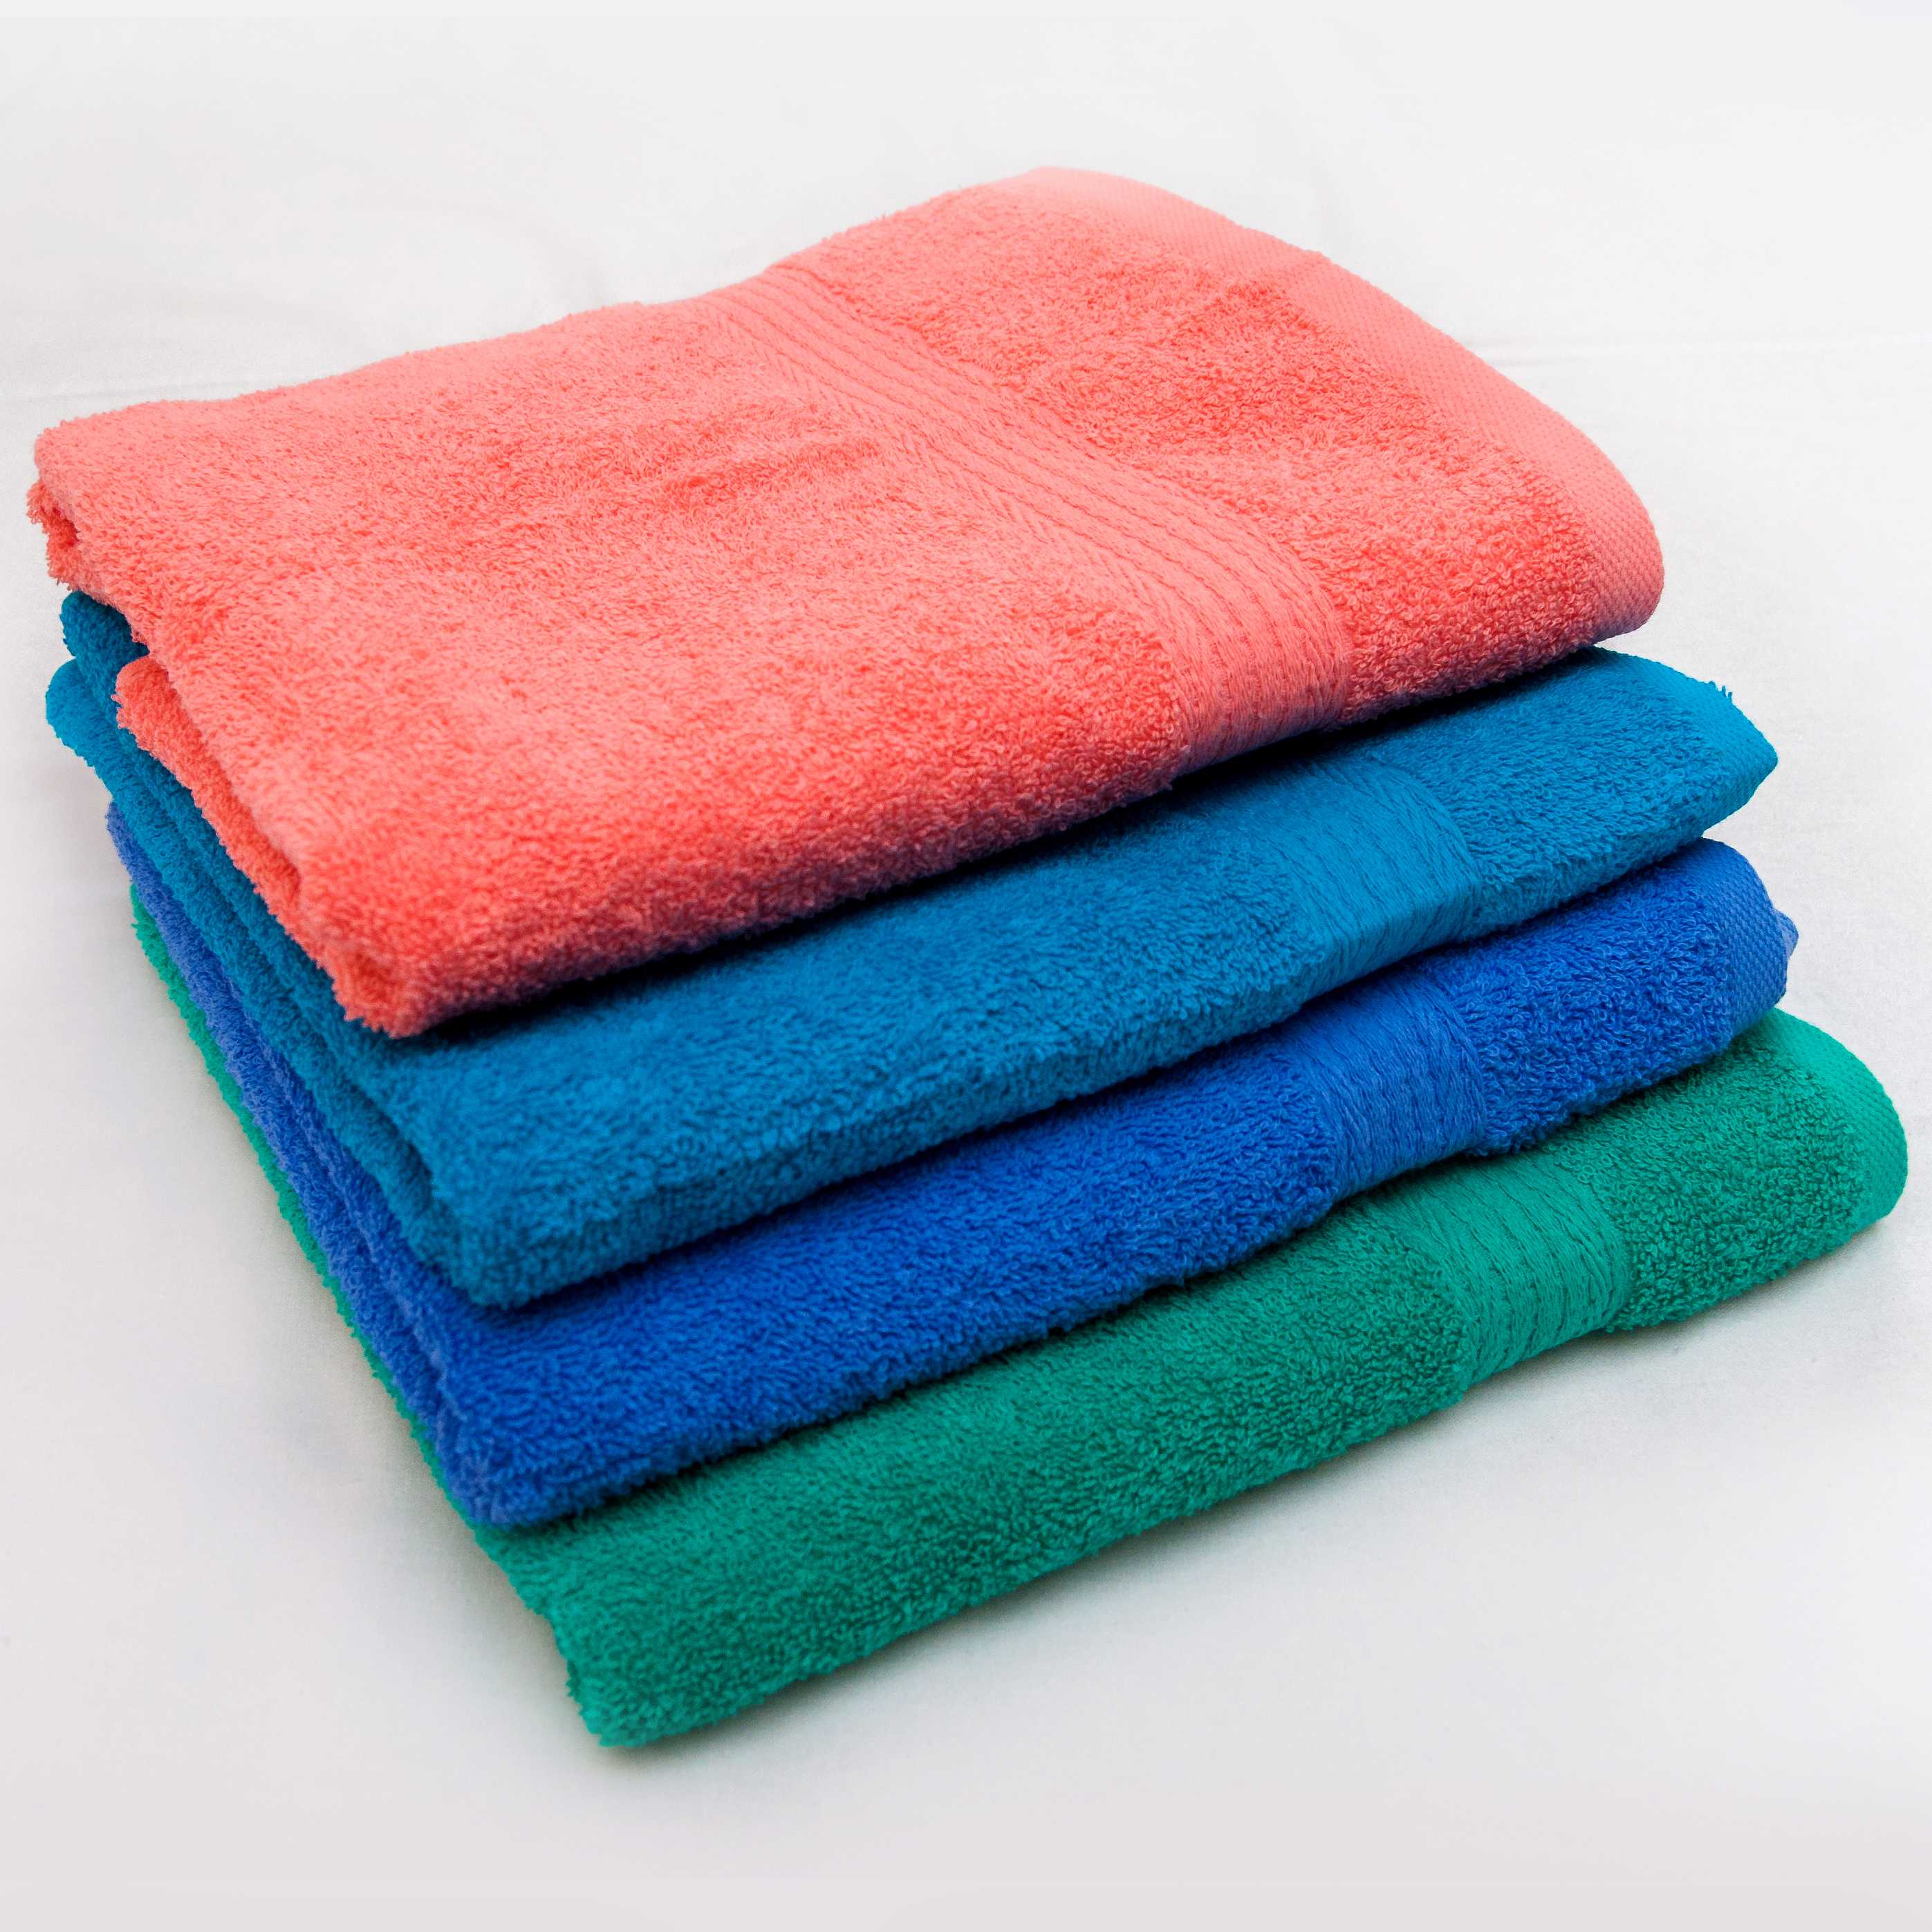 Банное махровое полотенце: какой размер лучше всего для тела, рук и лица Самые популярные и удобные варианты полотенец из вафельного материала для использования на кухне